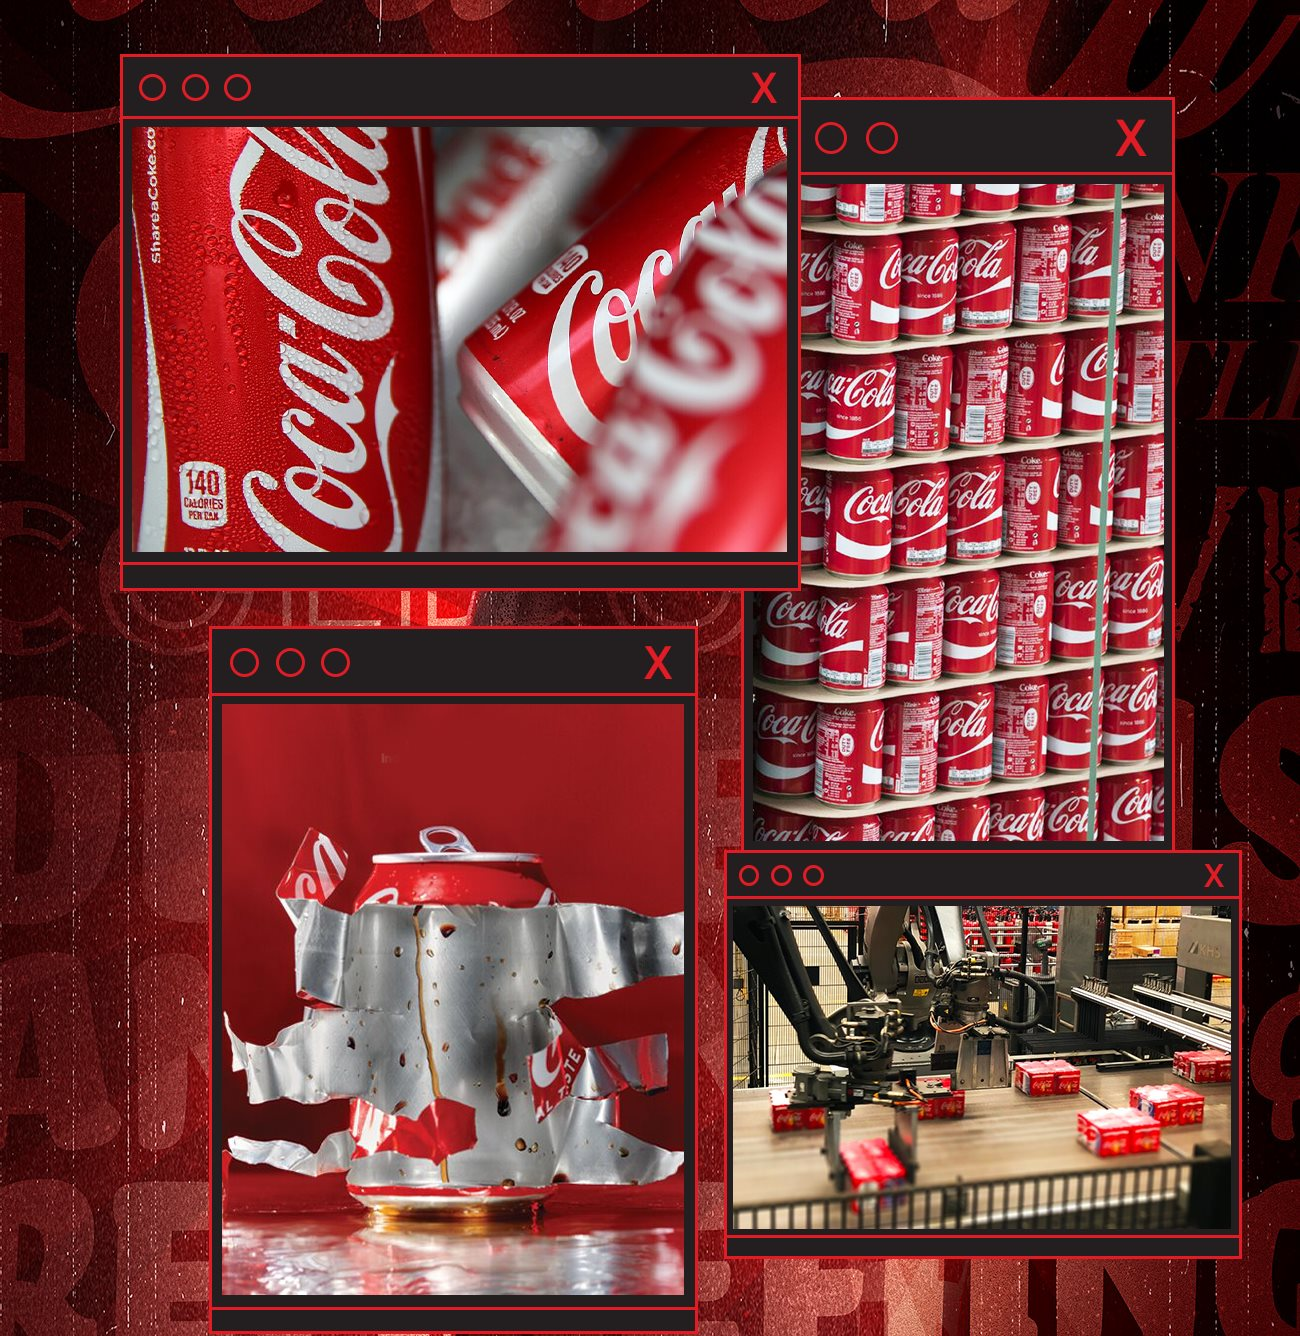 Vụ trộm bí mật kinh doanh chấn động: Coca Cola bị mất công thức trị giá 2.800 tỉ đồng, nữ thiên tài Trung Quốc suýt xây dựng trót lọt dây chuyền 'phake' ở quê hương - Ảnh 8.